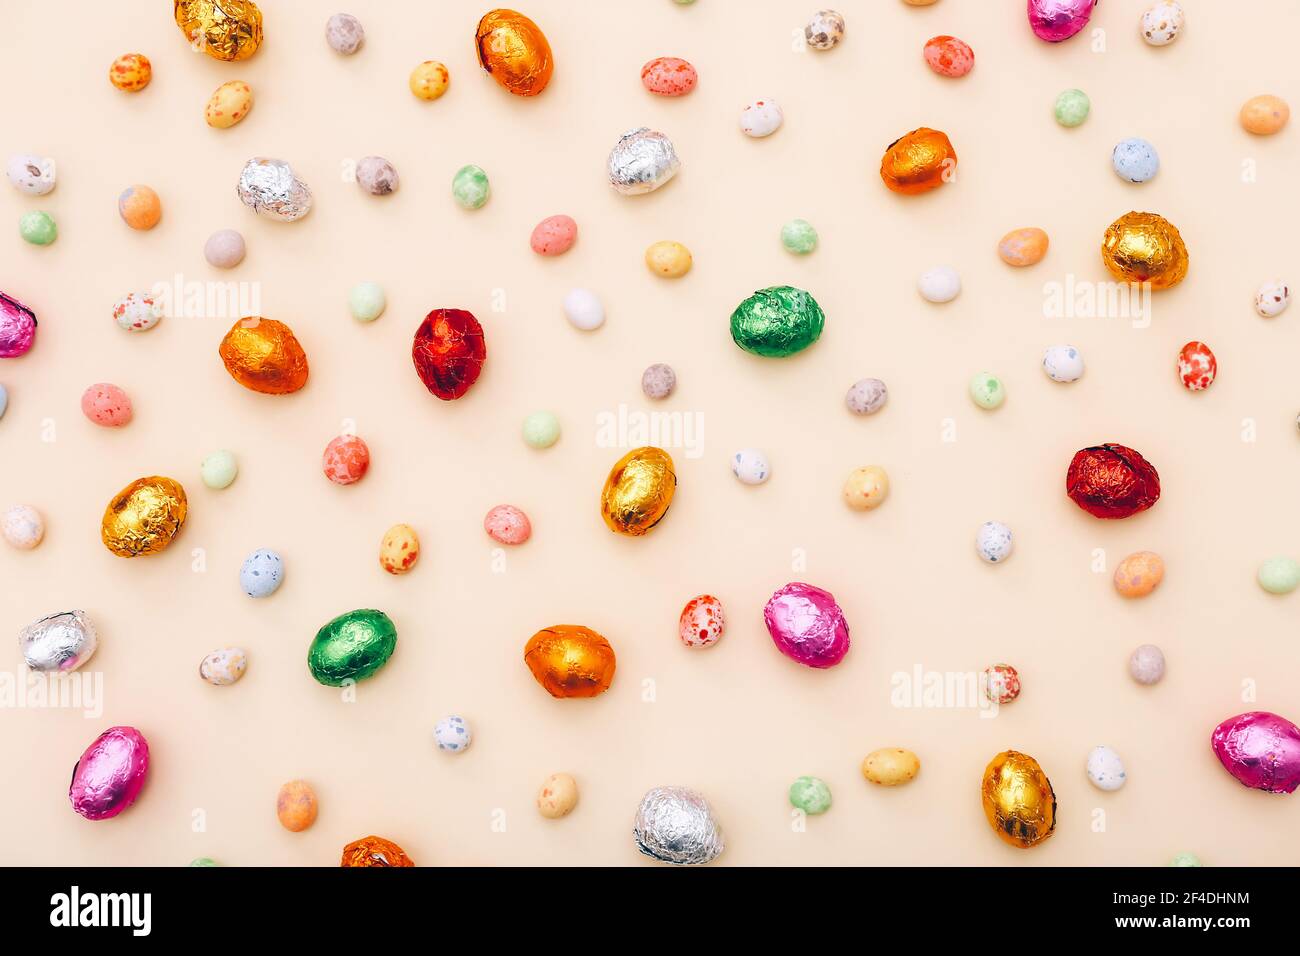 Mini uova di cioccolato pasquale avvolte in un foglio colorato, sparse su uno sfondo beige Foto Stock